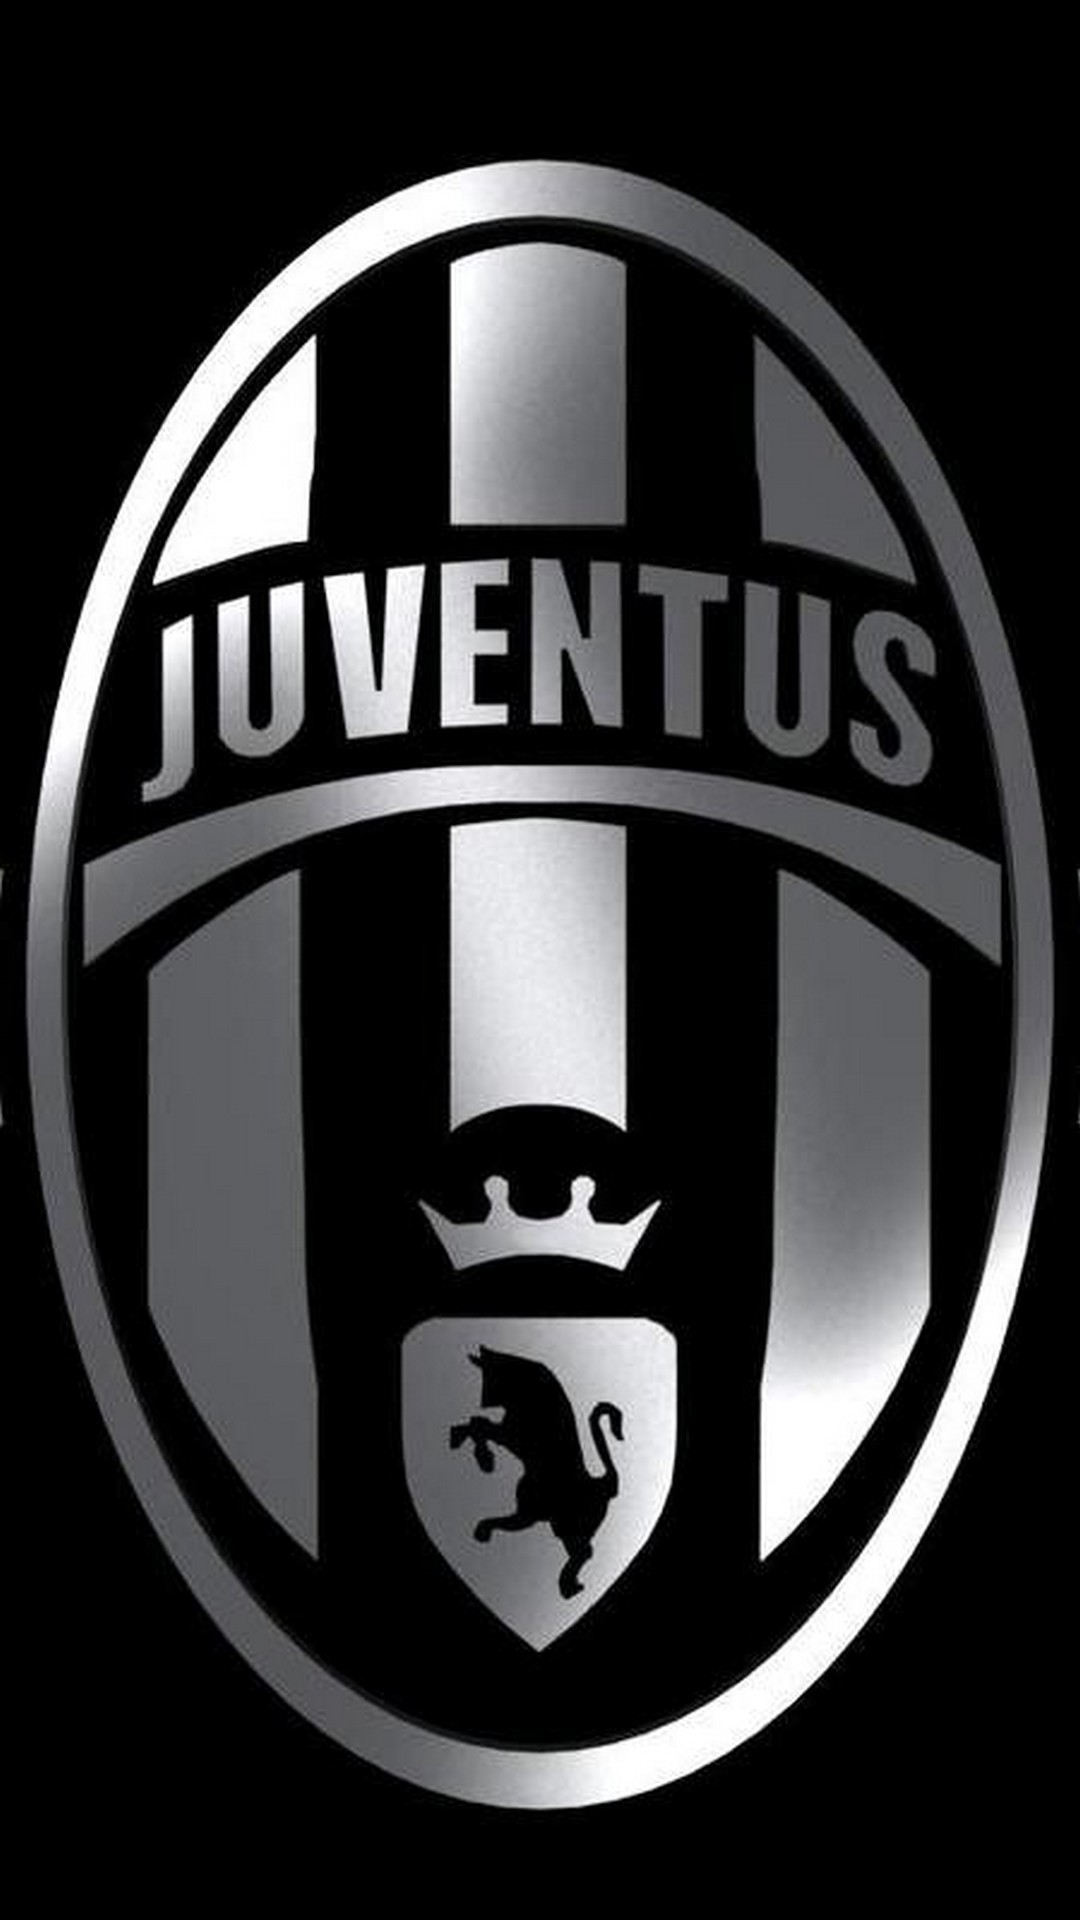 Juventus Logo Wallpaper Iphone resolution 1080x1920